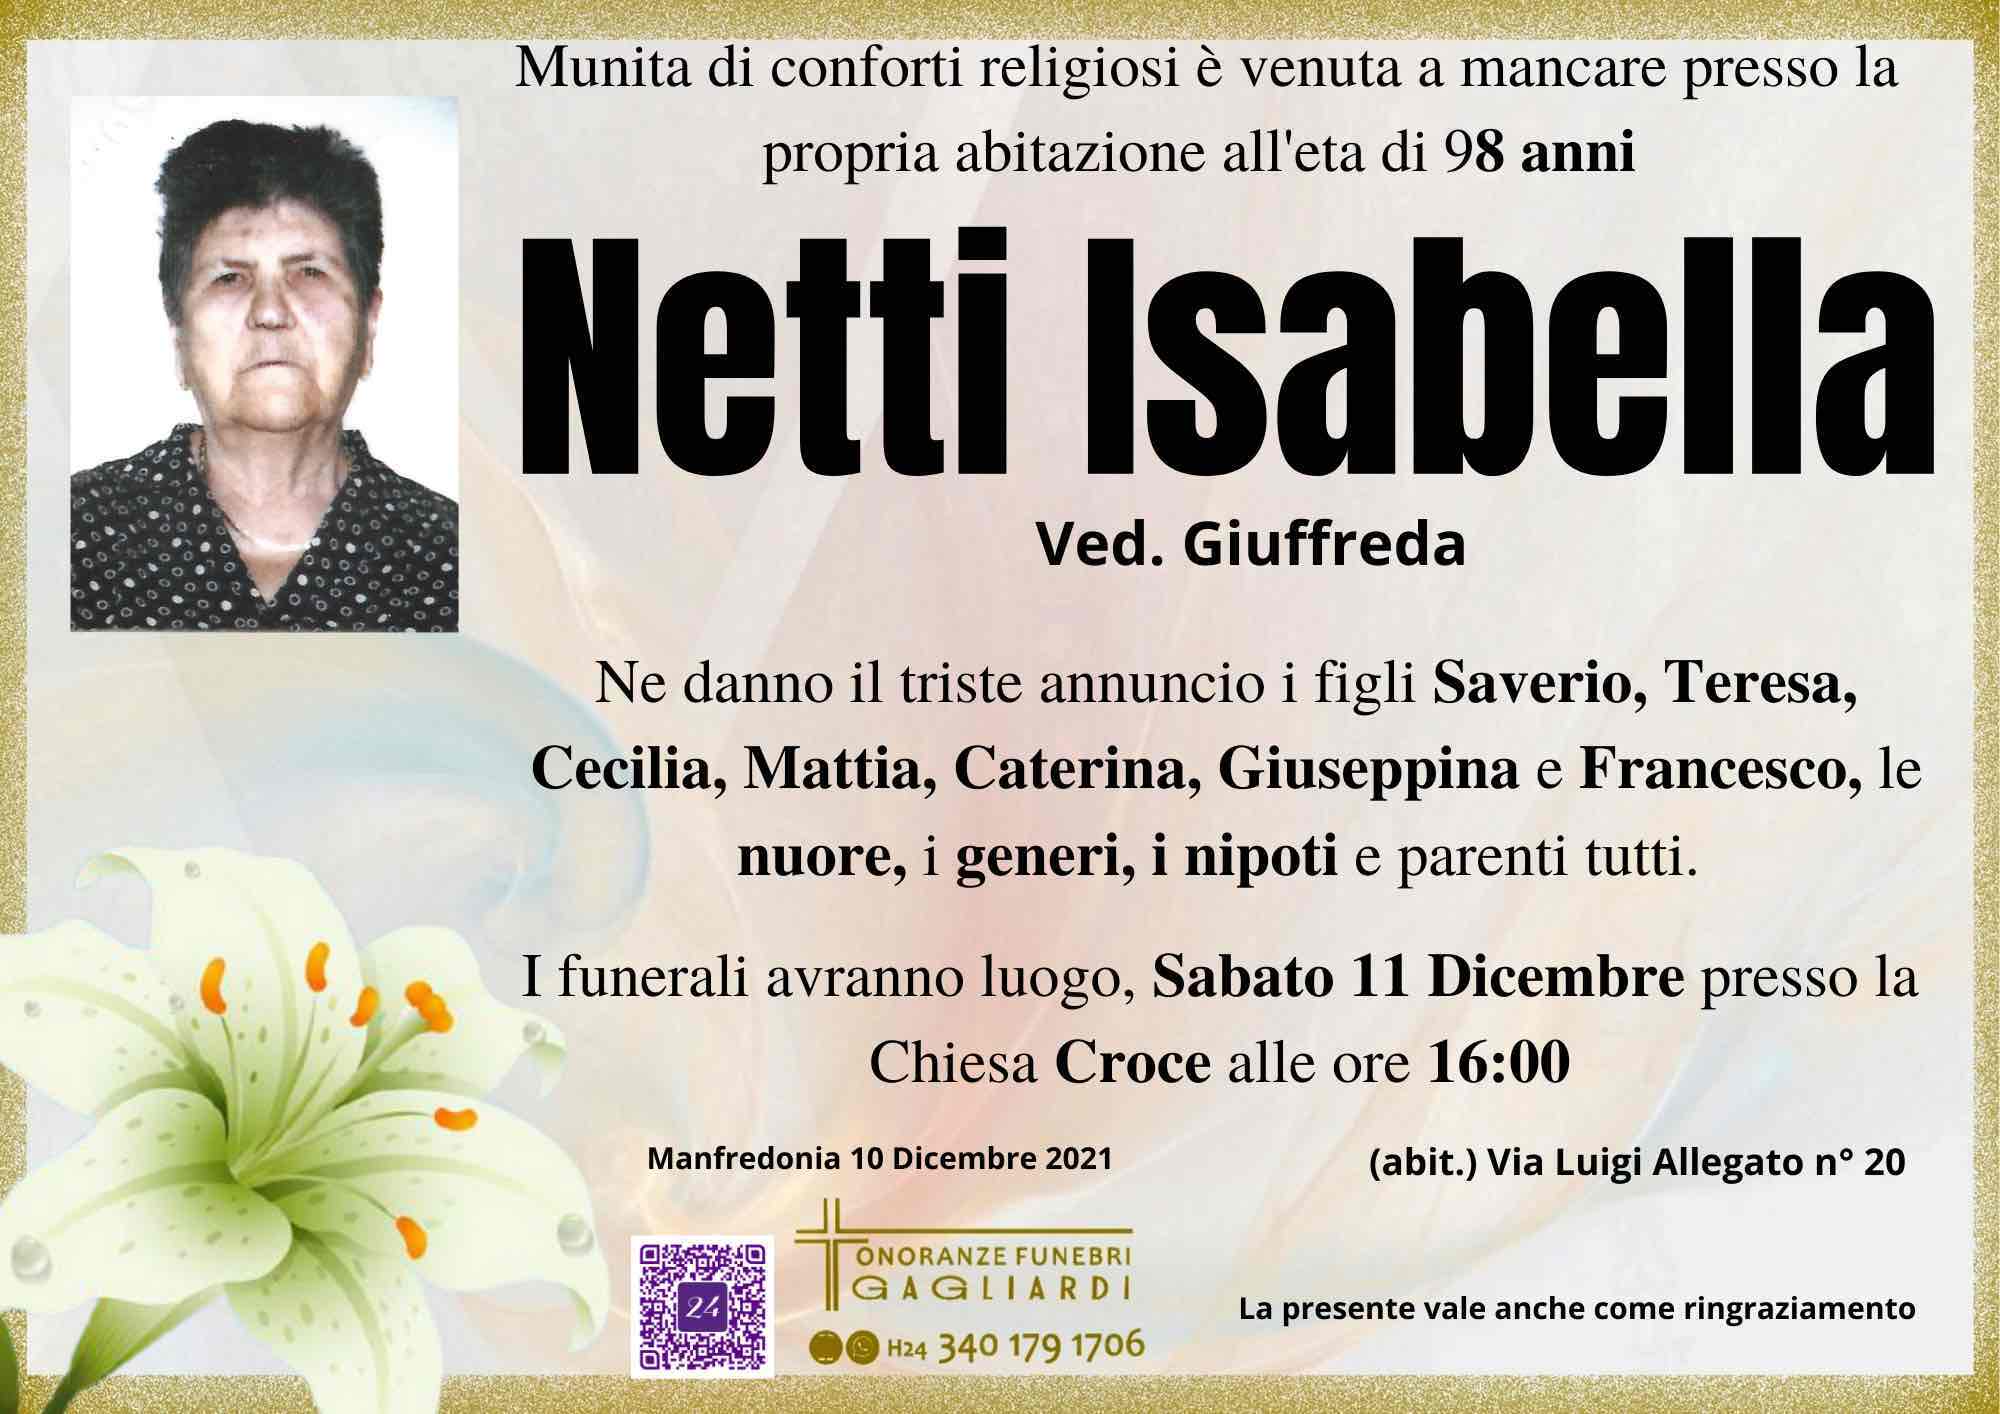 Isabella Netti